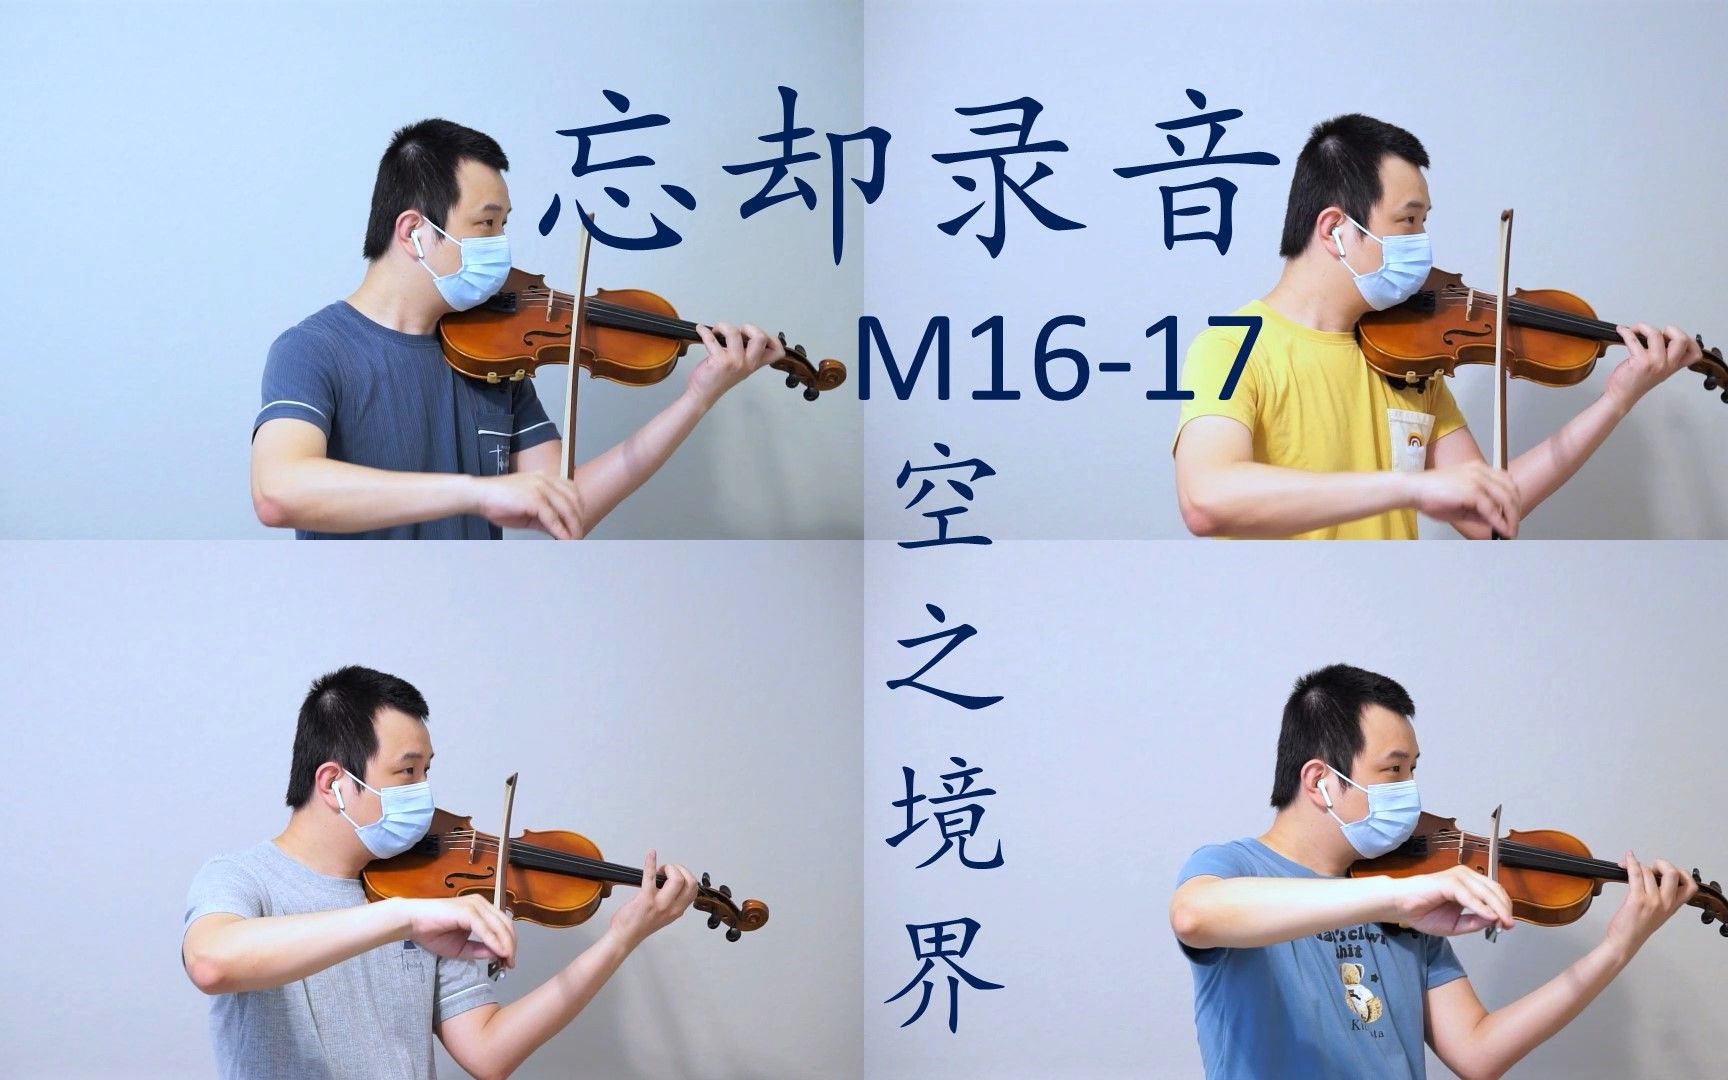 【小提琴】忘却录音 - M16/M17 - 空之境界